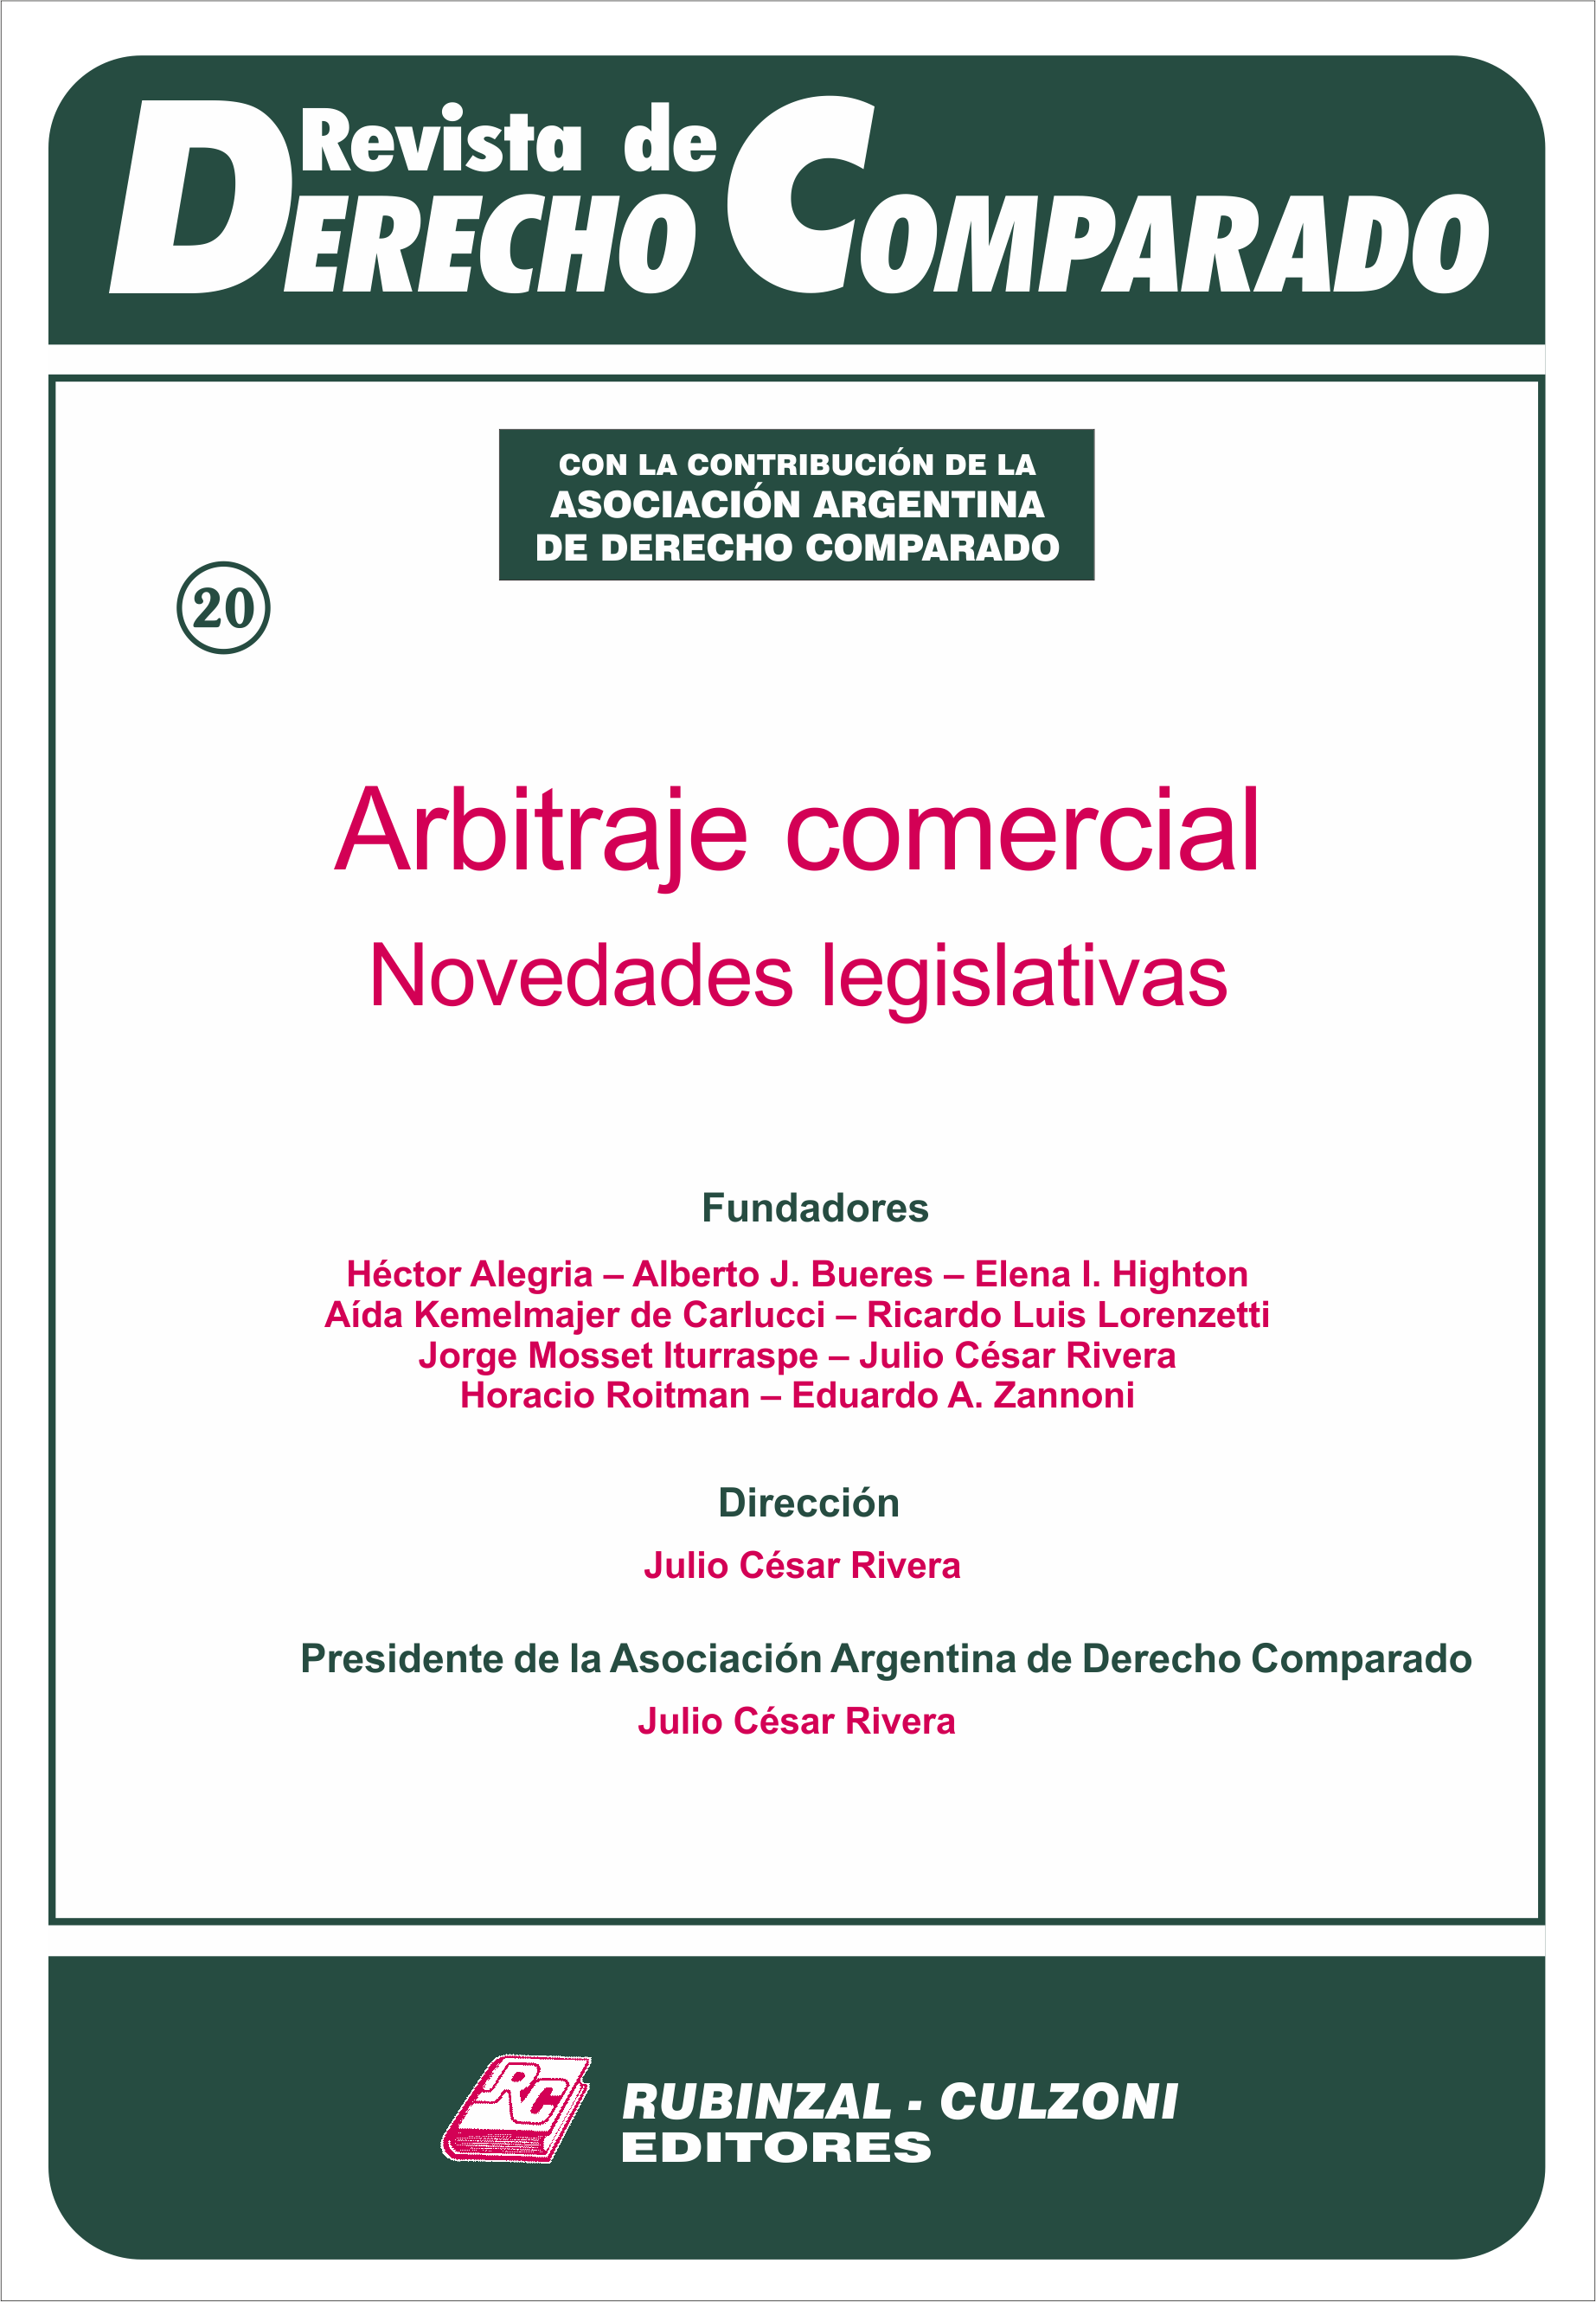 Revista de Derecho Comparado - Arbitraje comercial. Novedades legislativas.